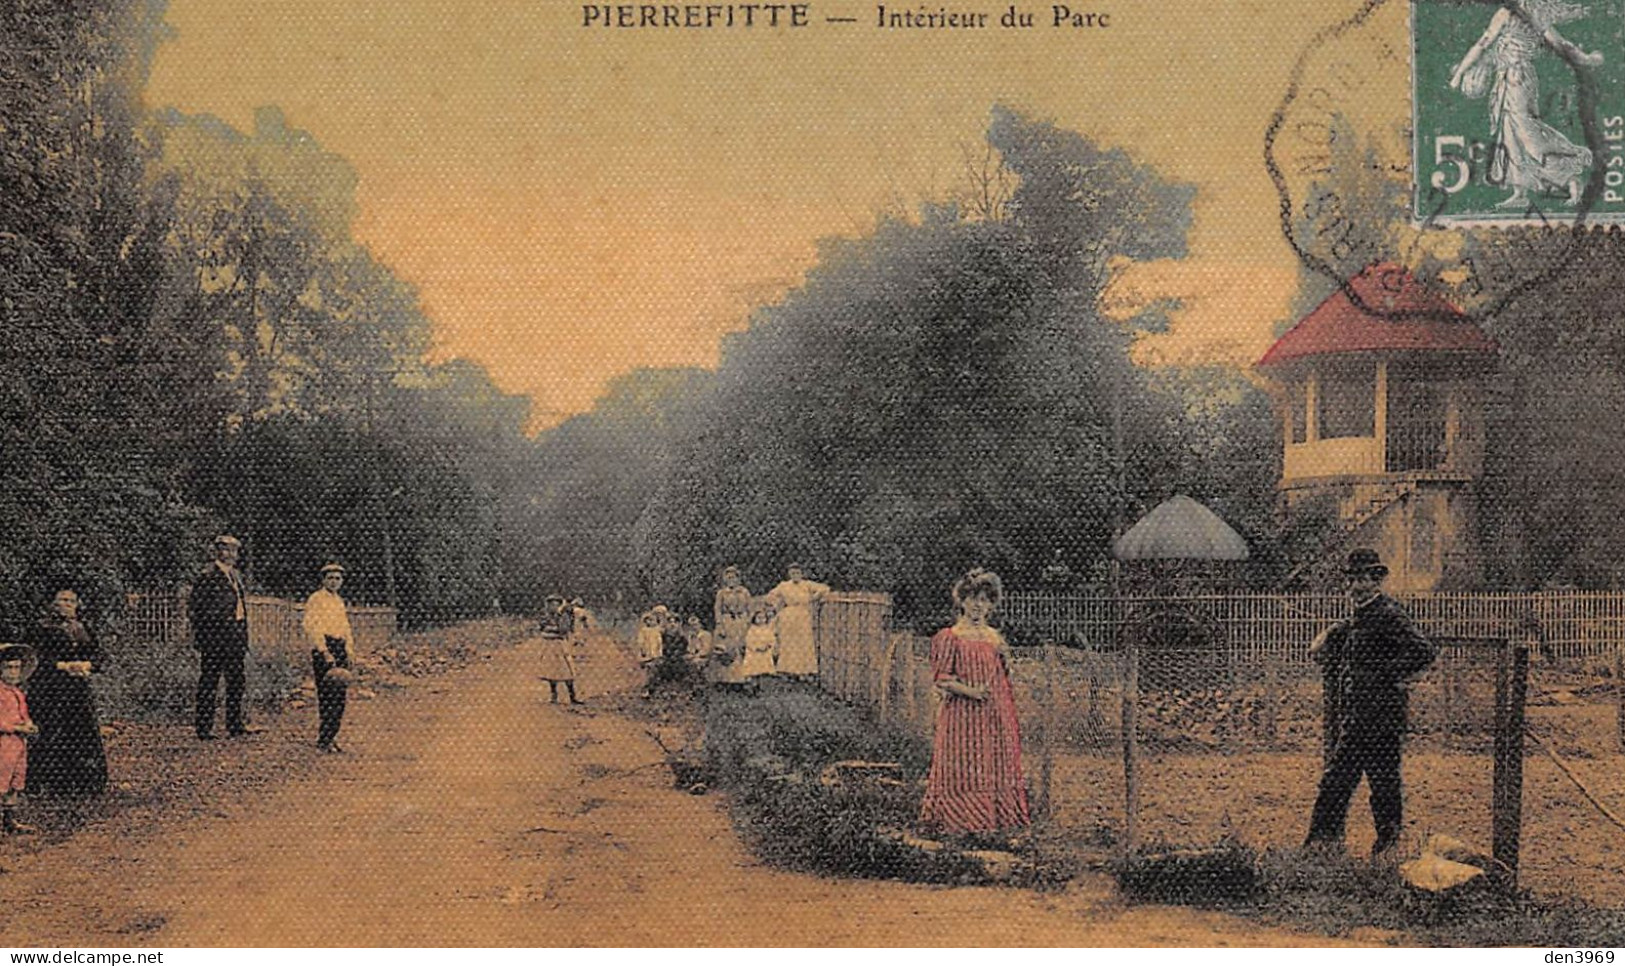 PIERREFITTE (Seine-Saint-Denis) - Intérieur Du Parc - Toilée Couleurs - Voyagé 1912 (2 Scans) Reims, 9 R De Bétheniville - Pierrefitte Sur Seine